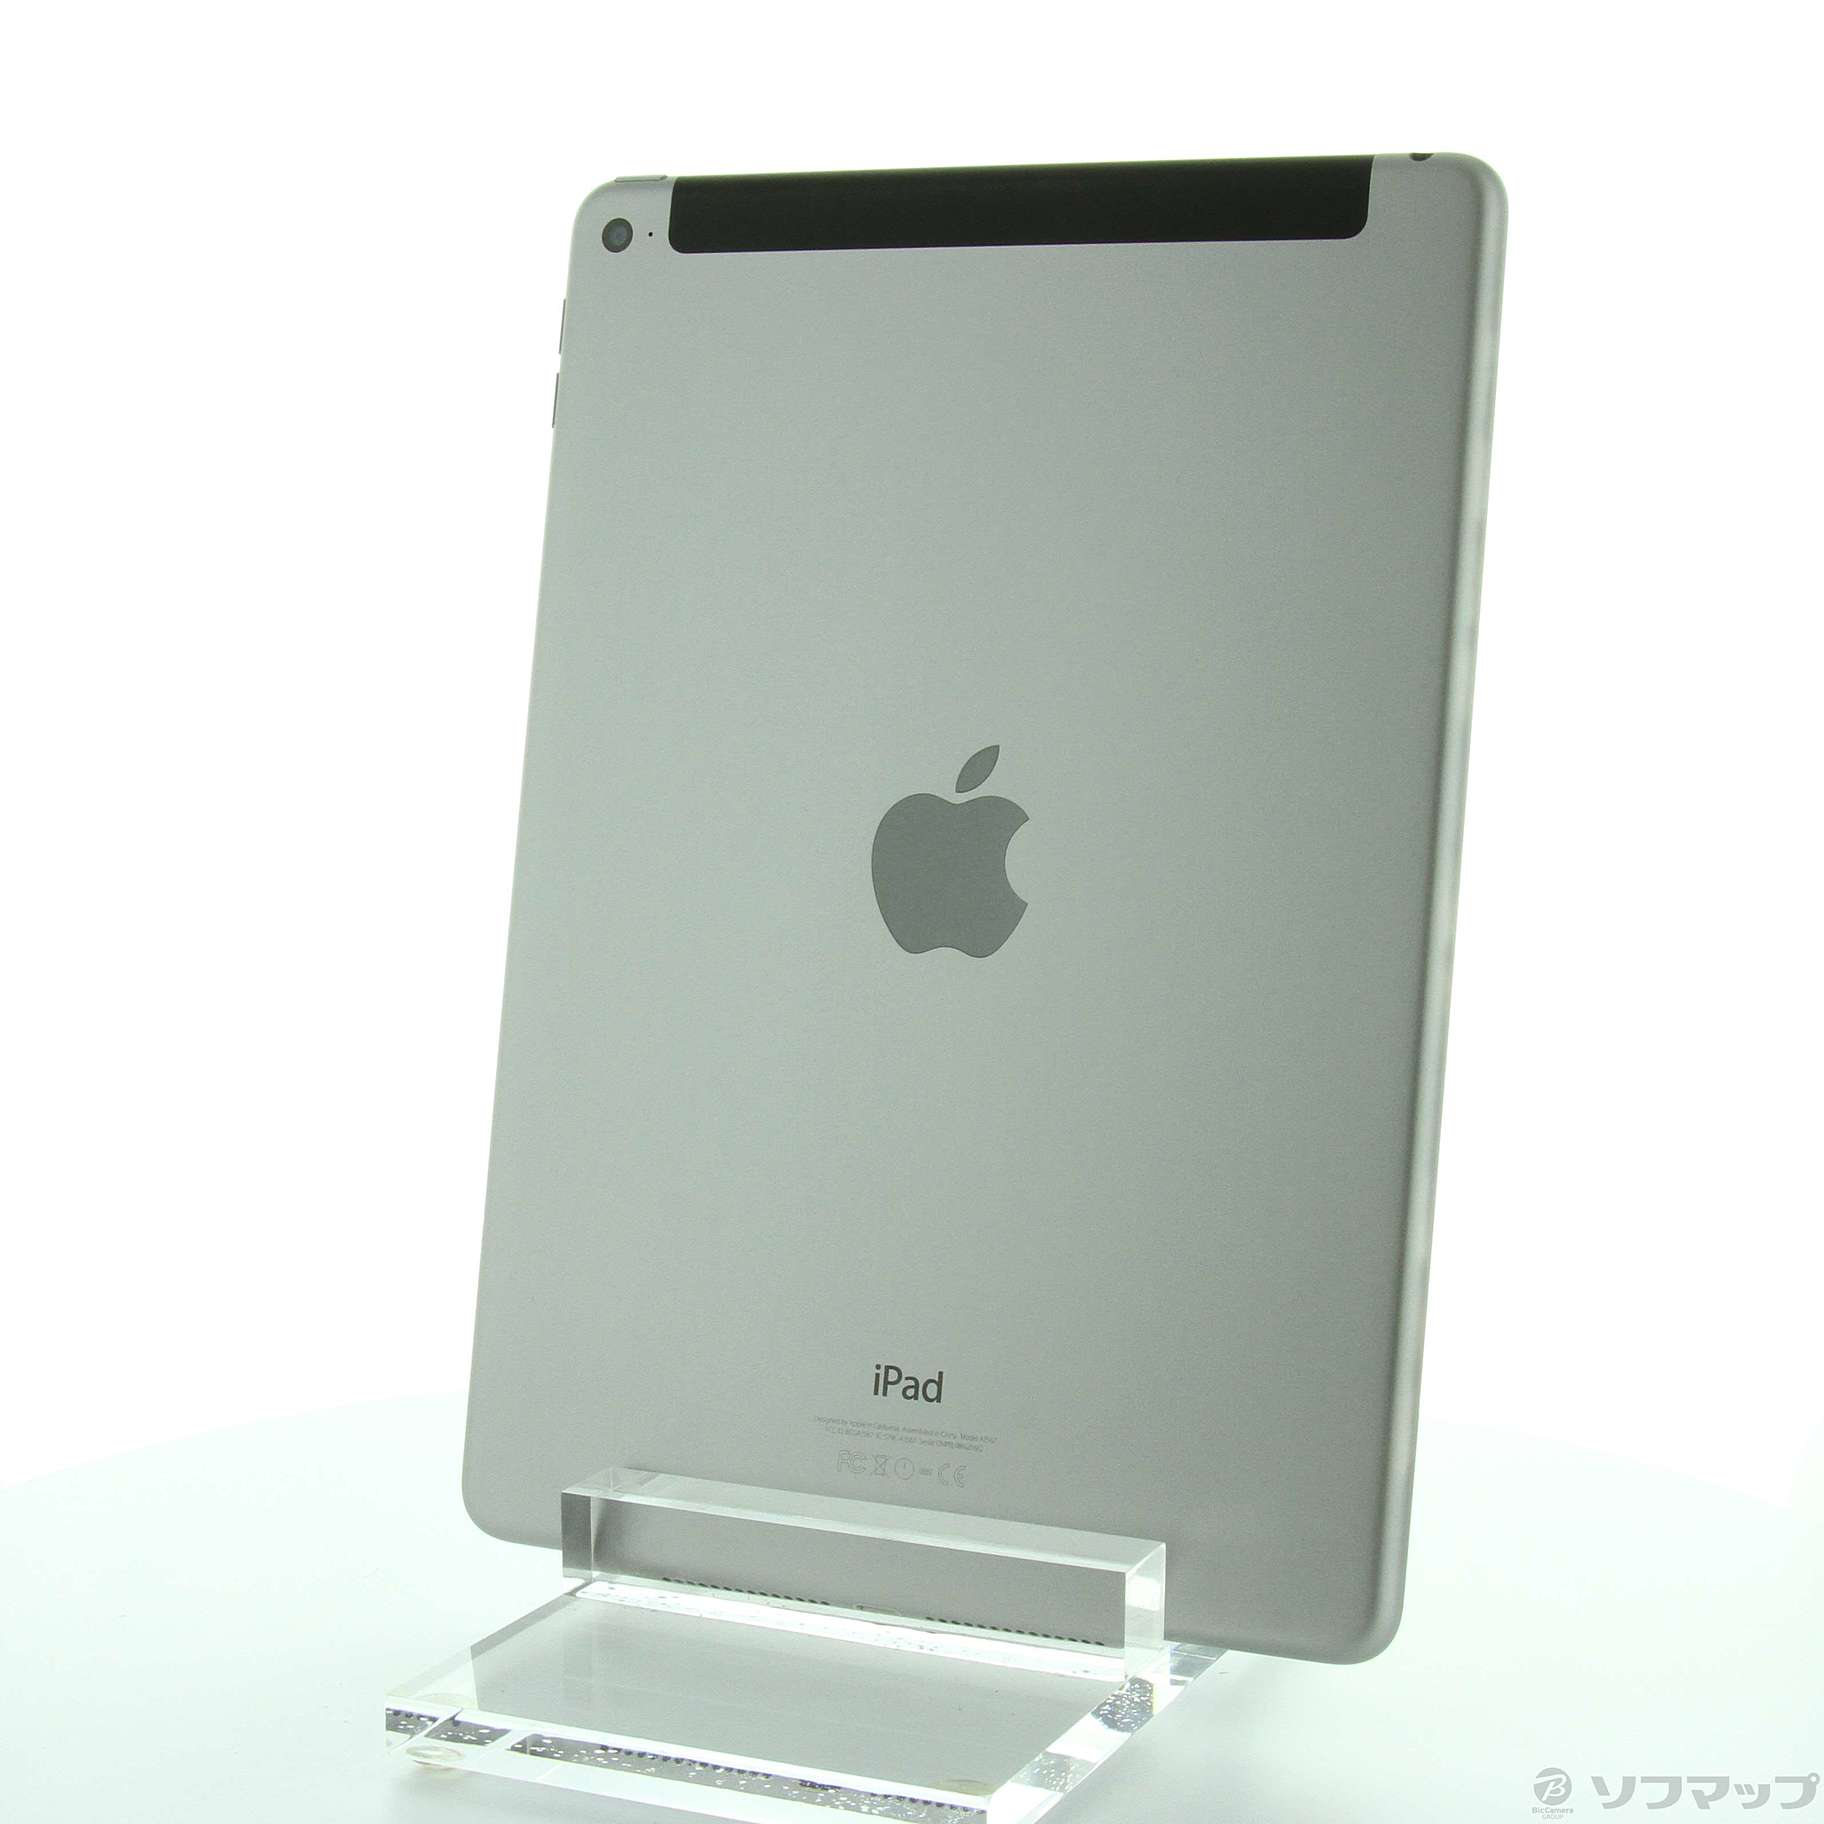 中古品iPad Air 2 16GB空间灰色MGGX2J/A au|no邮购是Sofmap[sofmap]